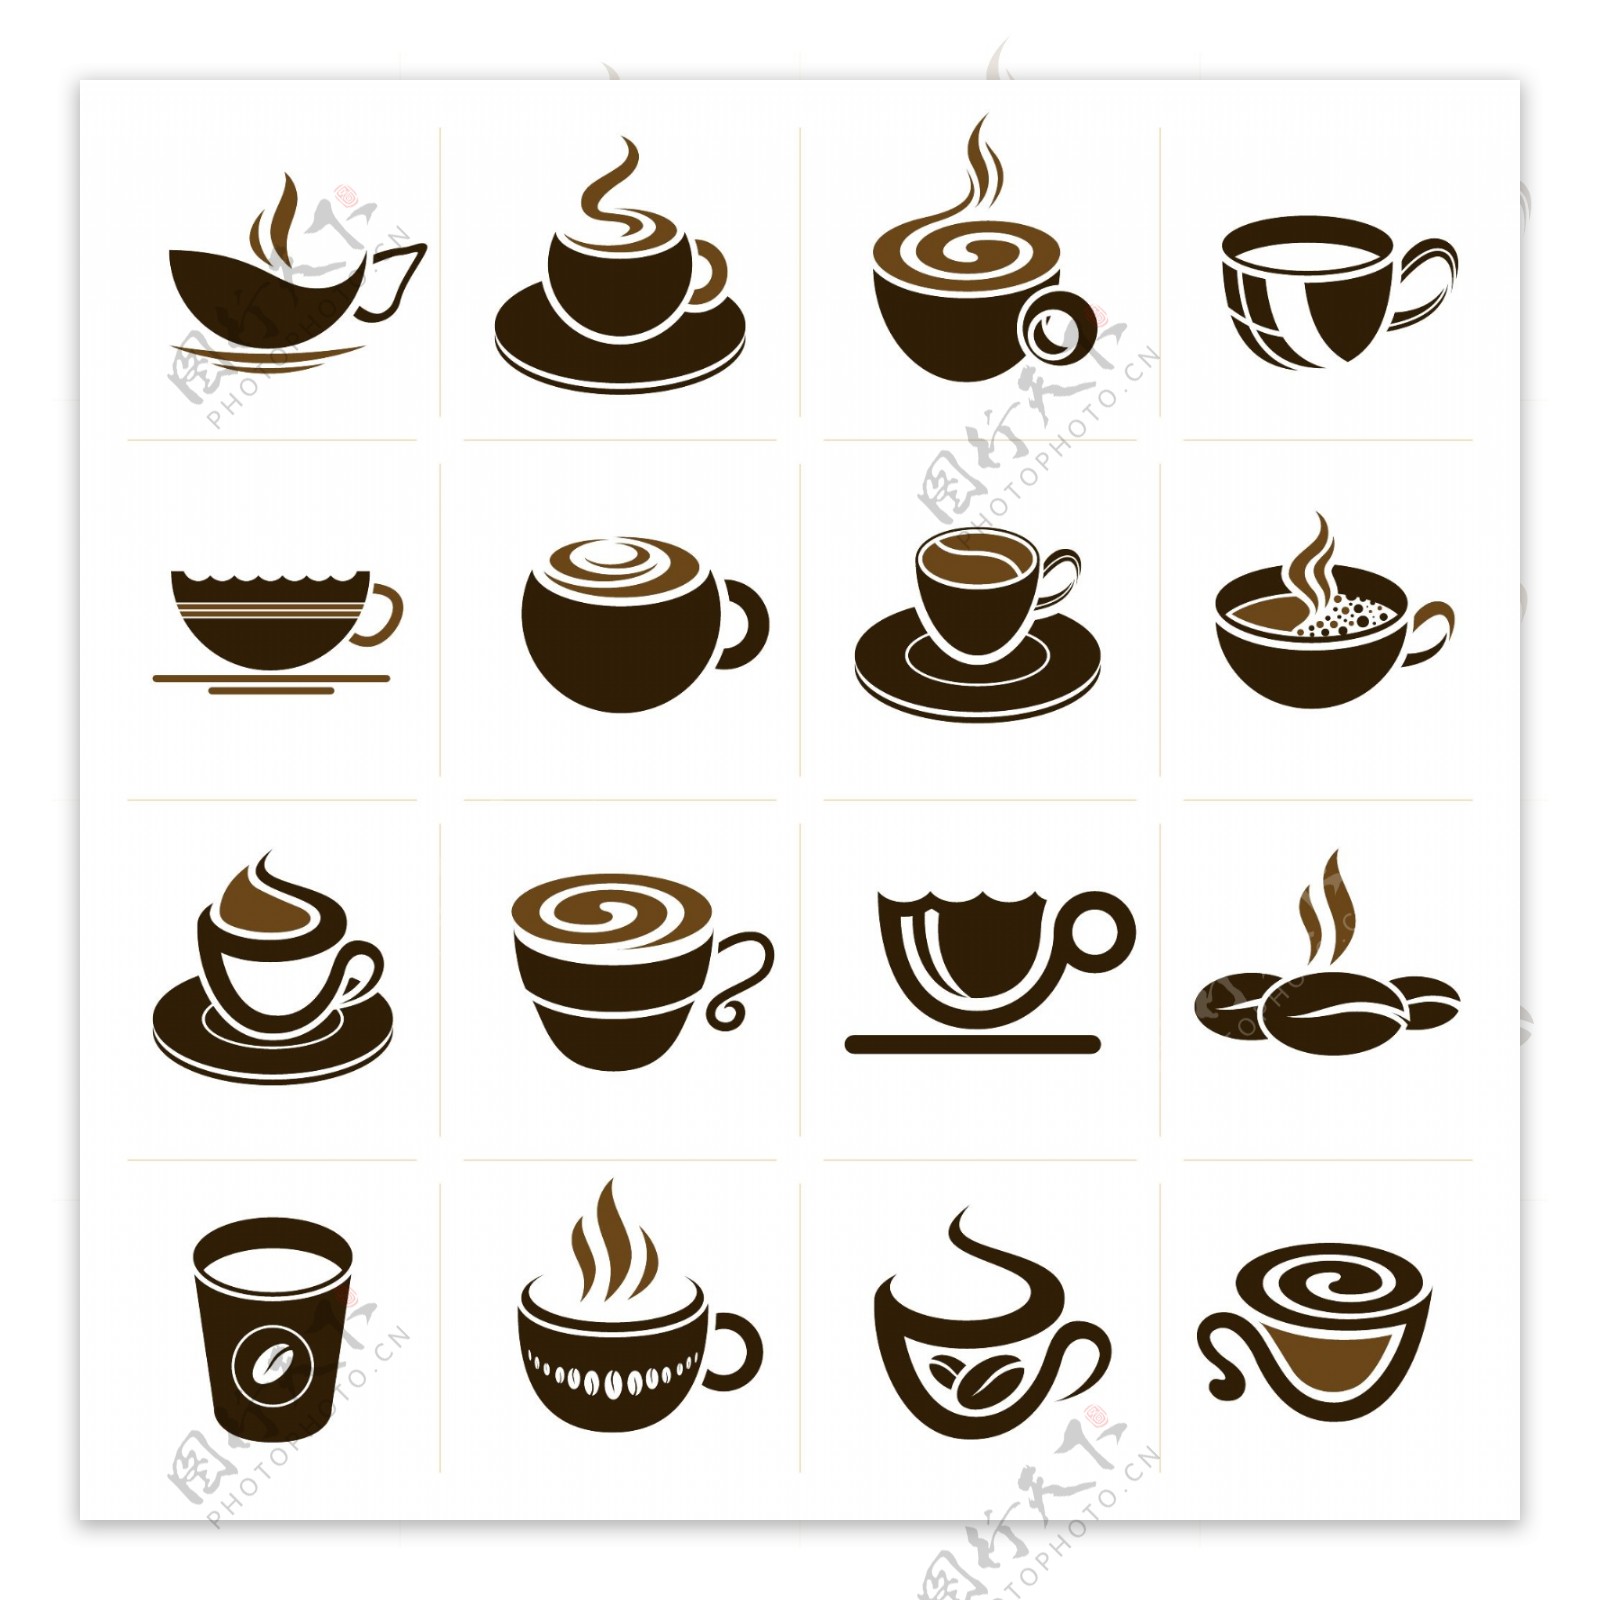 抽象咖啡杯设计矢量图